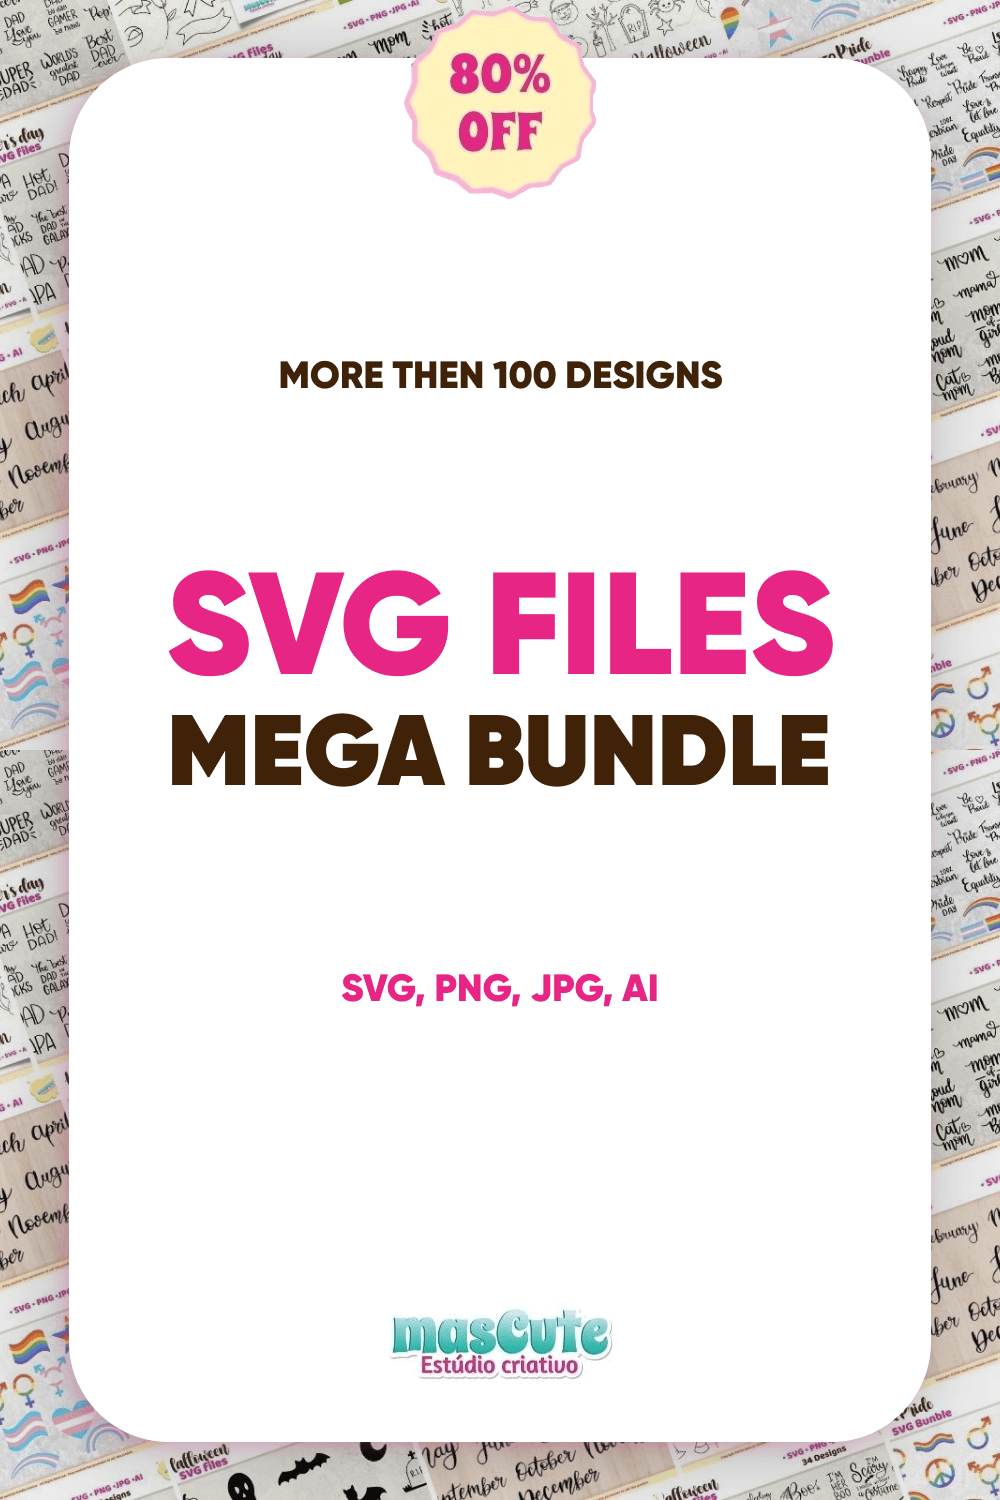 SVG Files Mega Bundle.